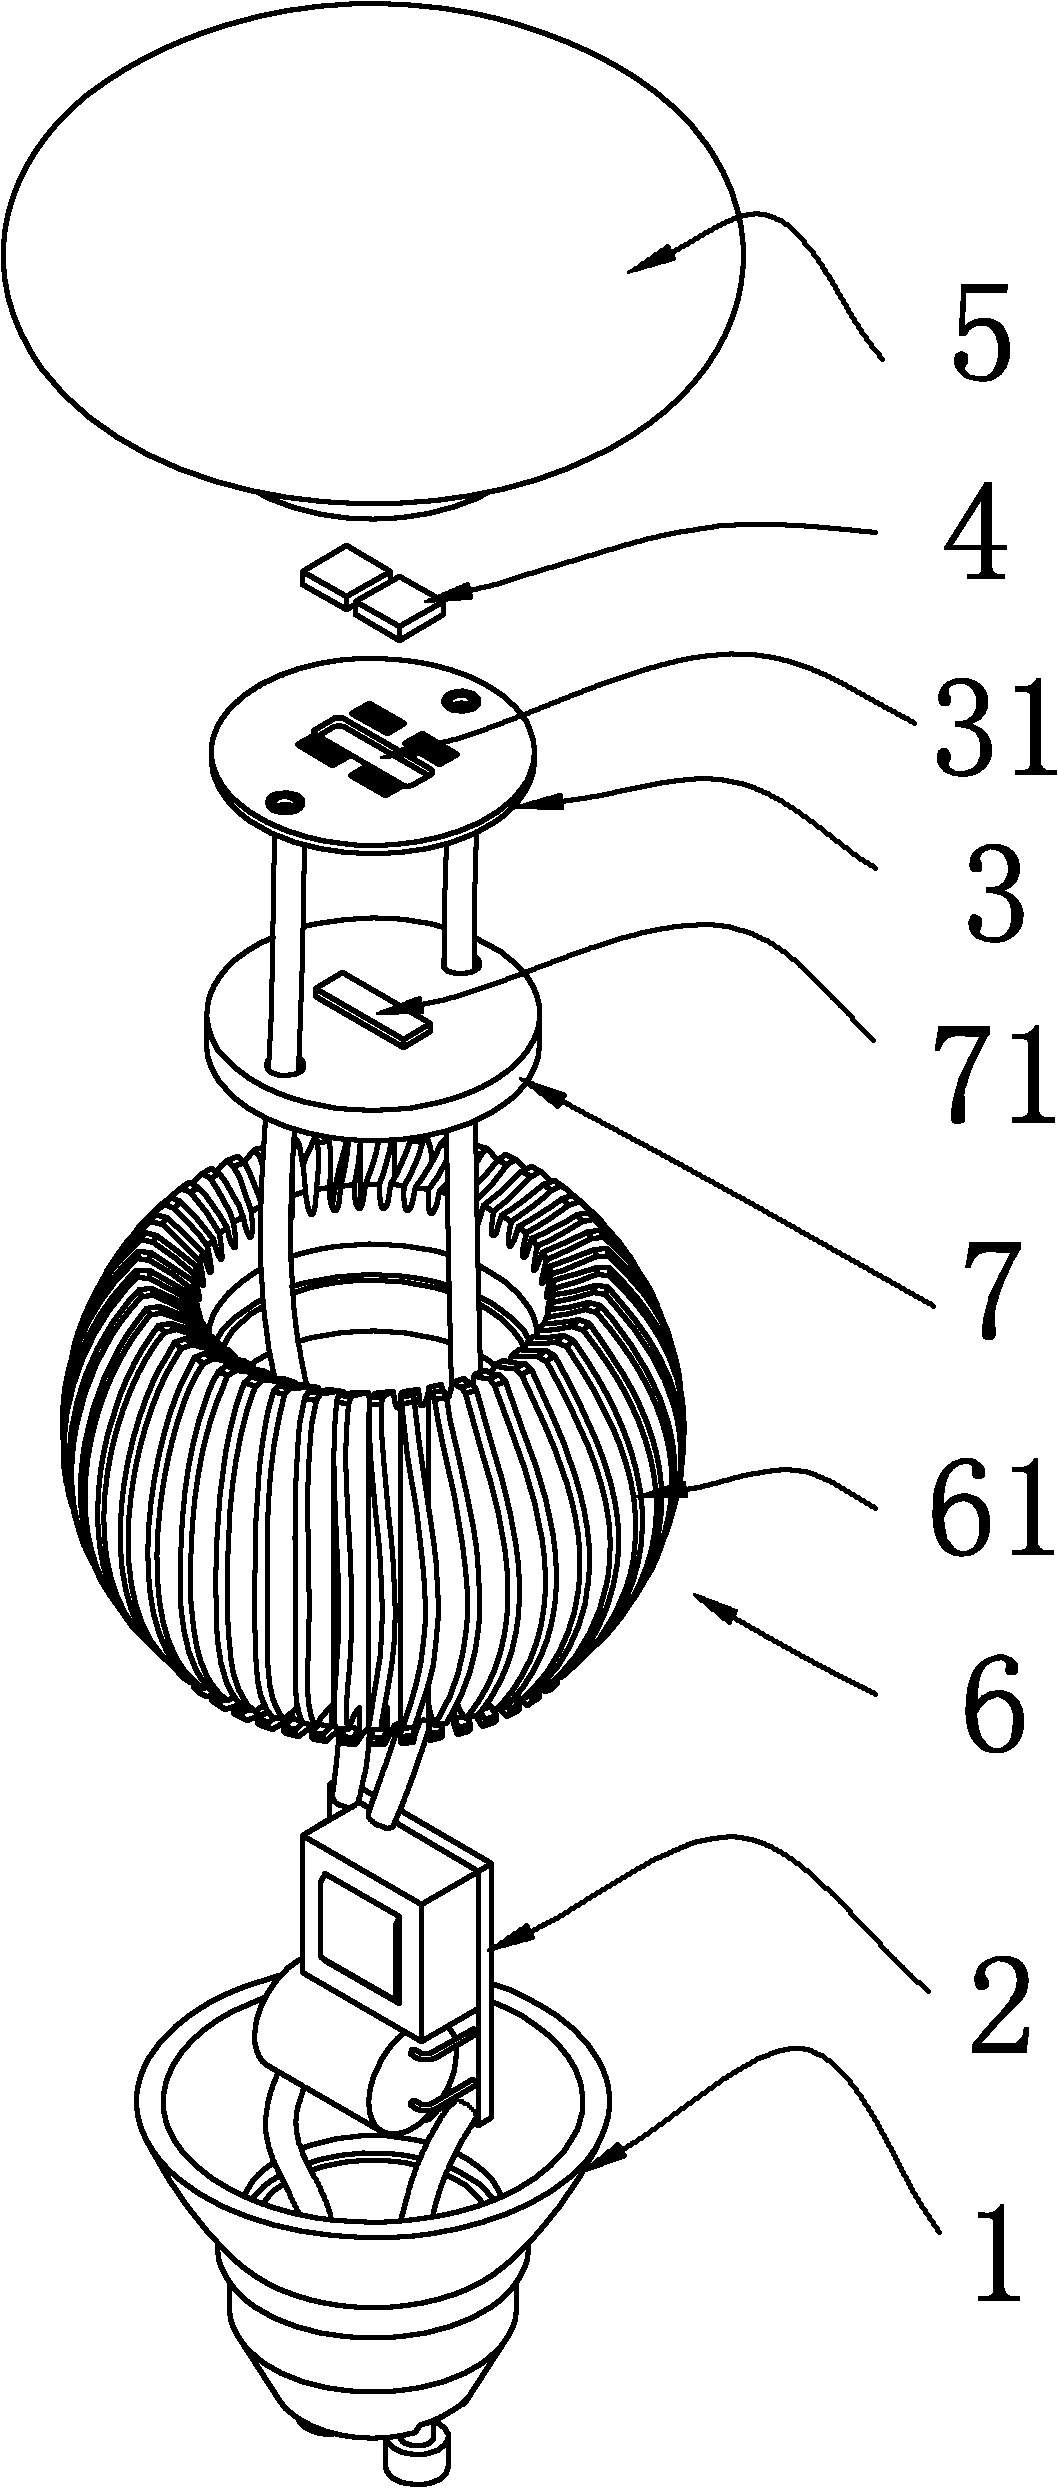 LED (Light-Emitting Diode) illuminating lamp